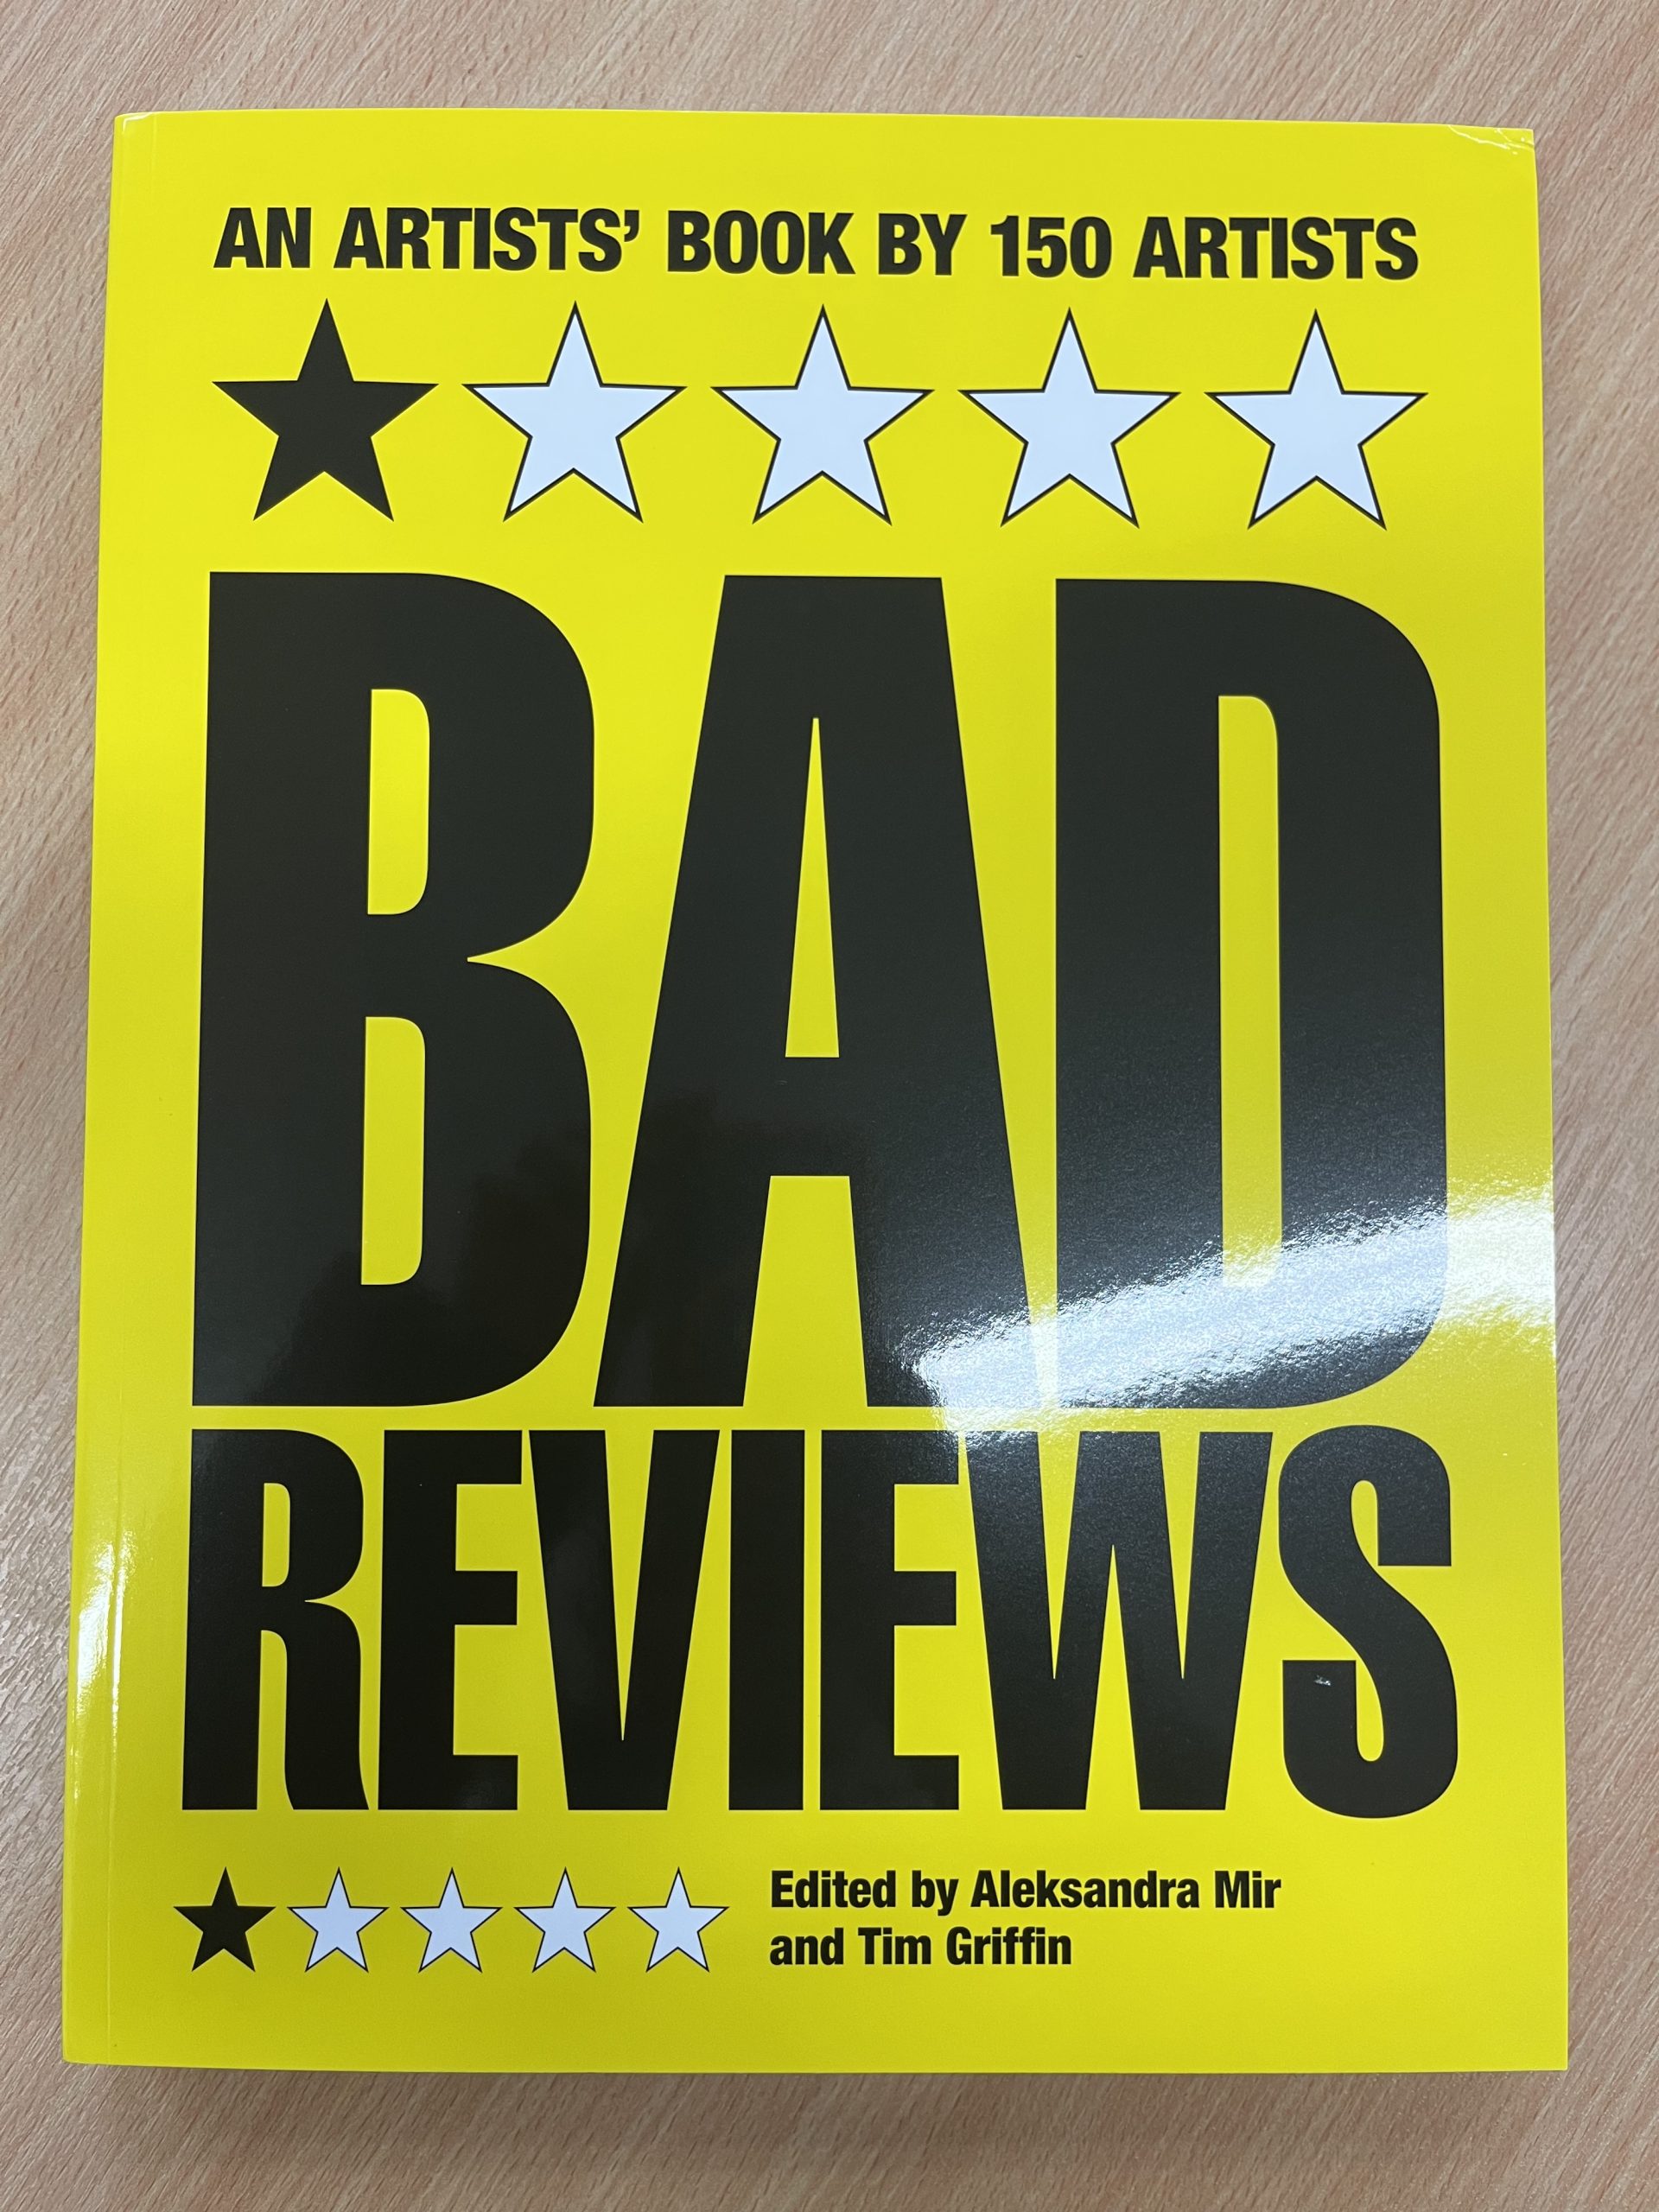 Bad Reviews